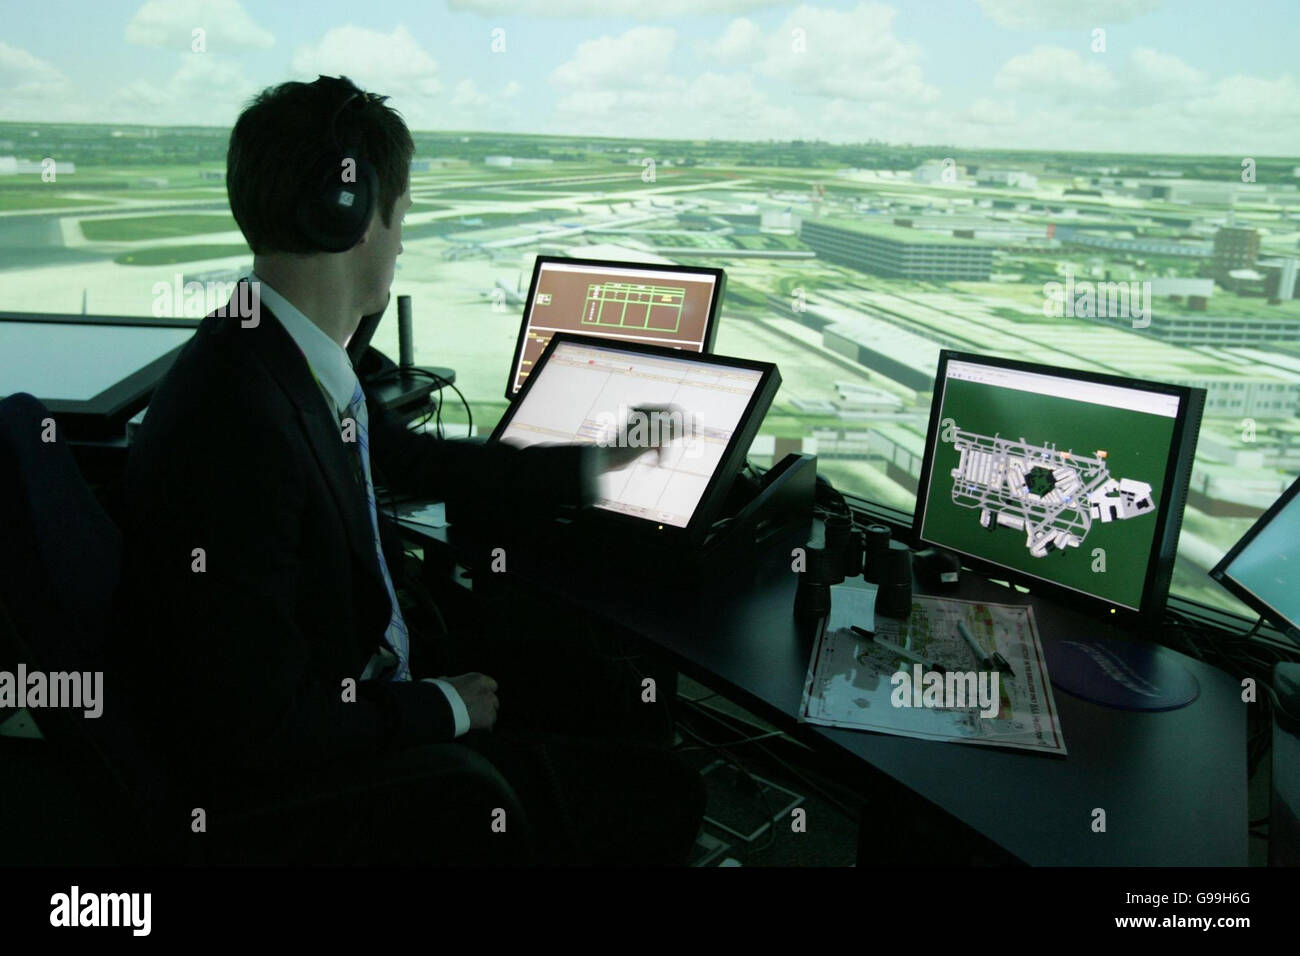 Dale Reeson, ein Fluglotse, sitzt im neuen 360 Grad Heathrow Control Tower Simulator im Air Traffic Control Tower am Flughafen Heathrow. Stockfoto